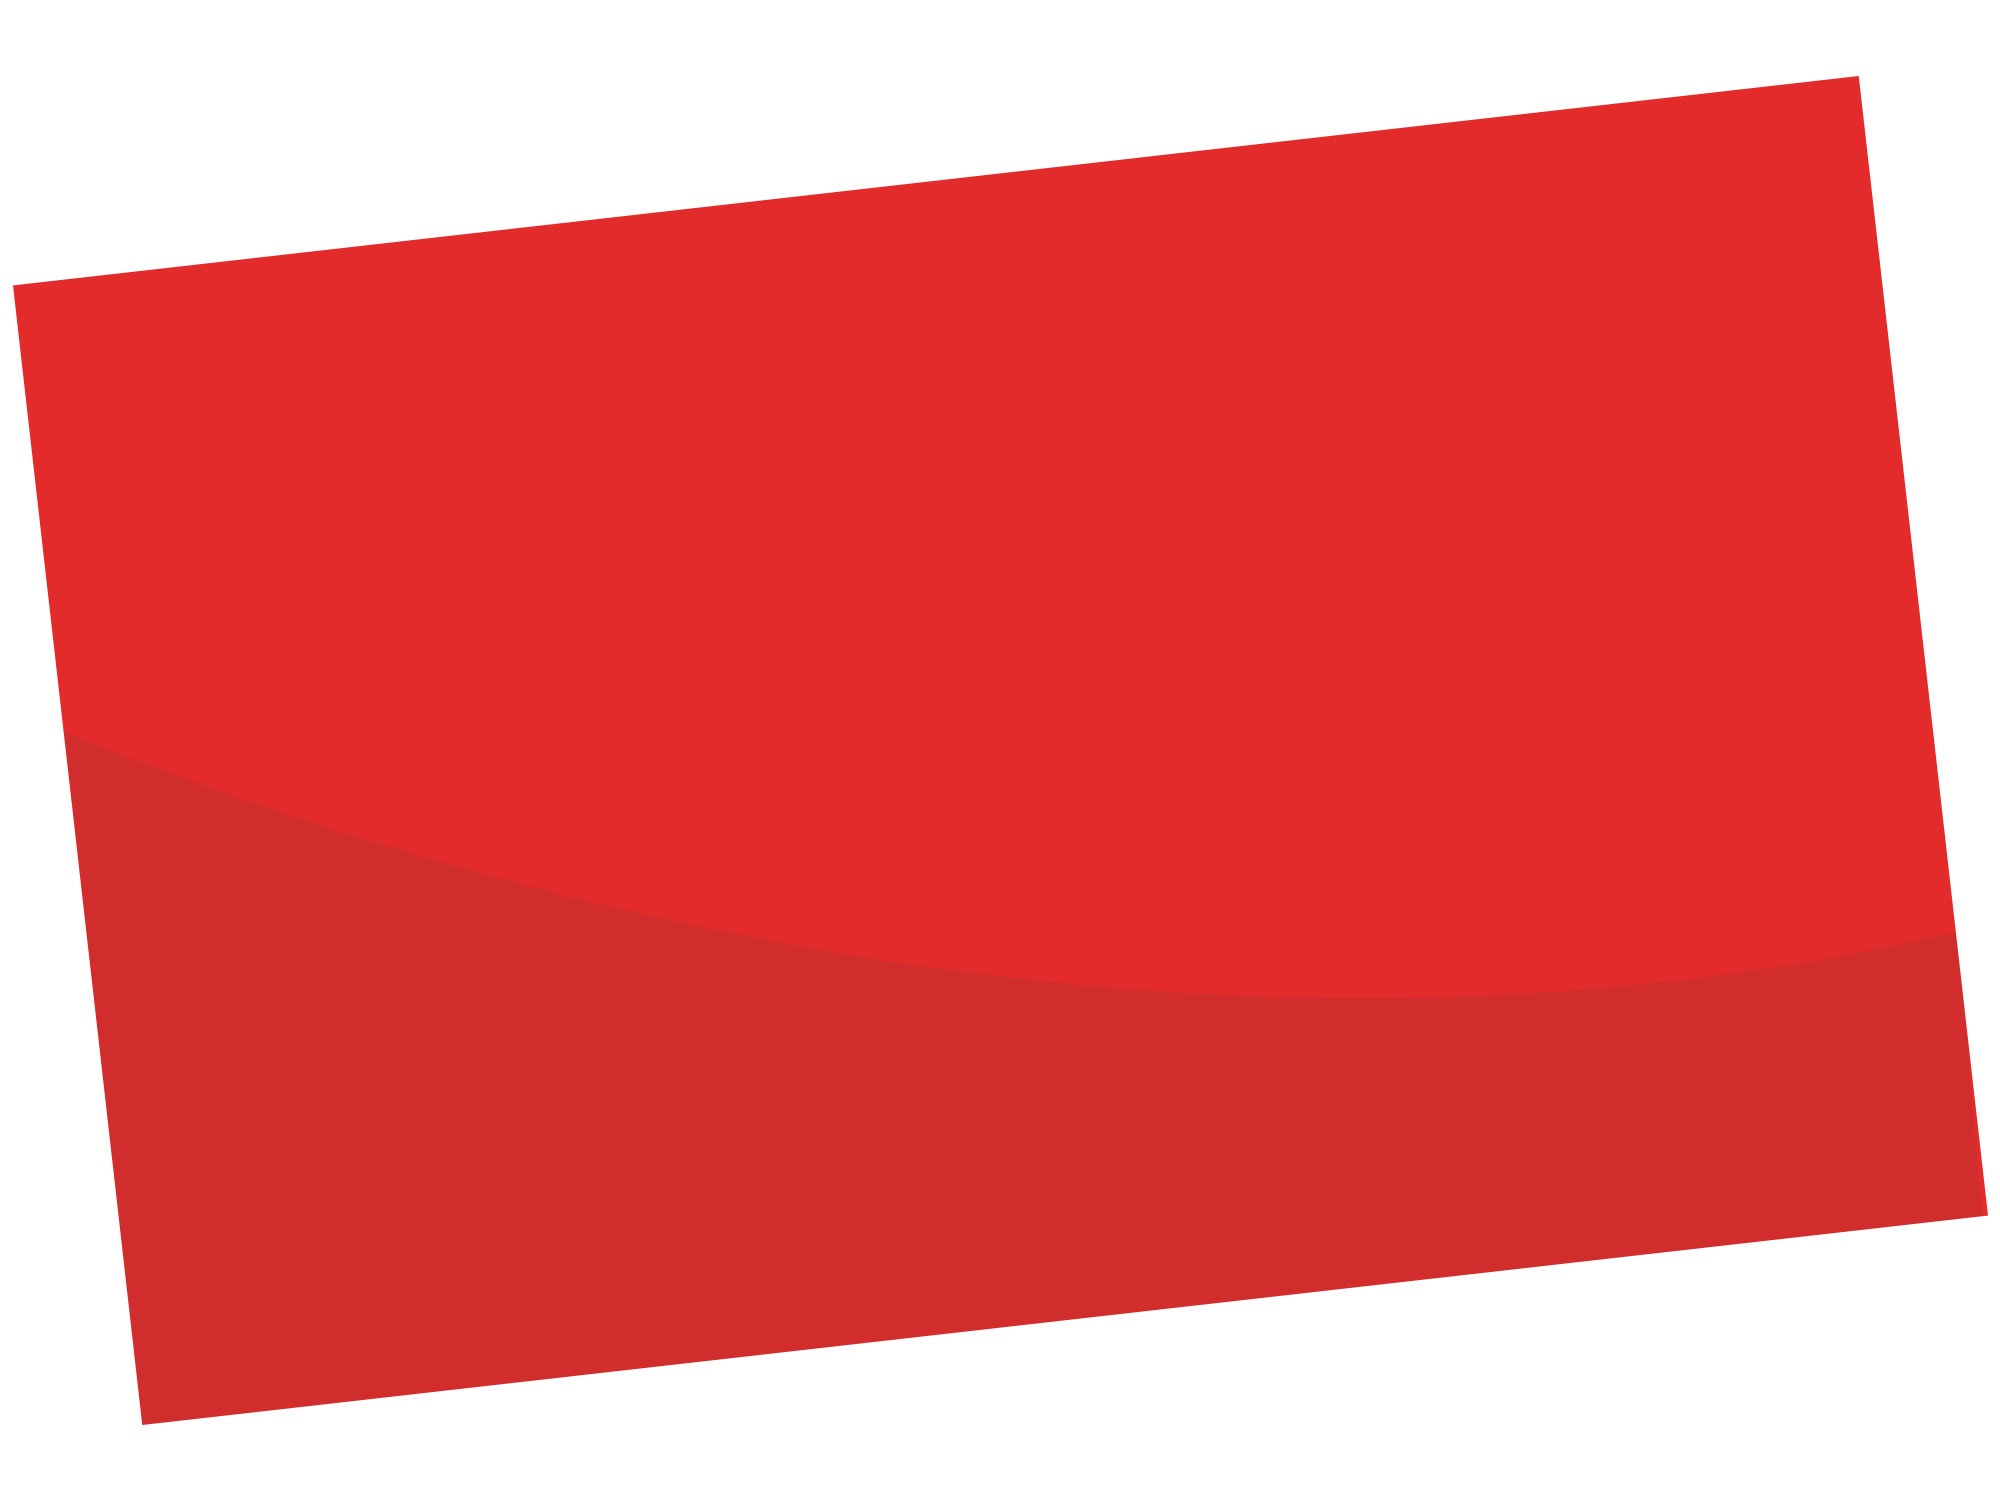 Image de rectangle rouge avec une ombre foncée inspirée du logo de l'entreprise de peinture EURL Henriet Daniel à Besançon et en France Comté